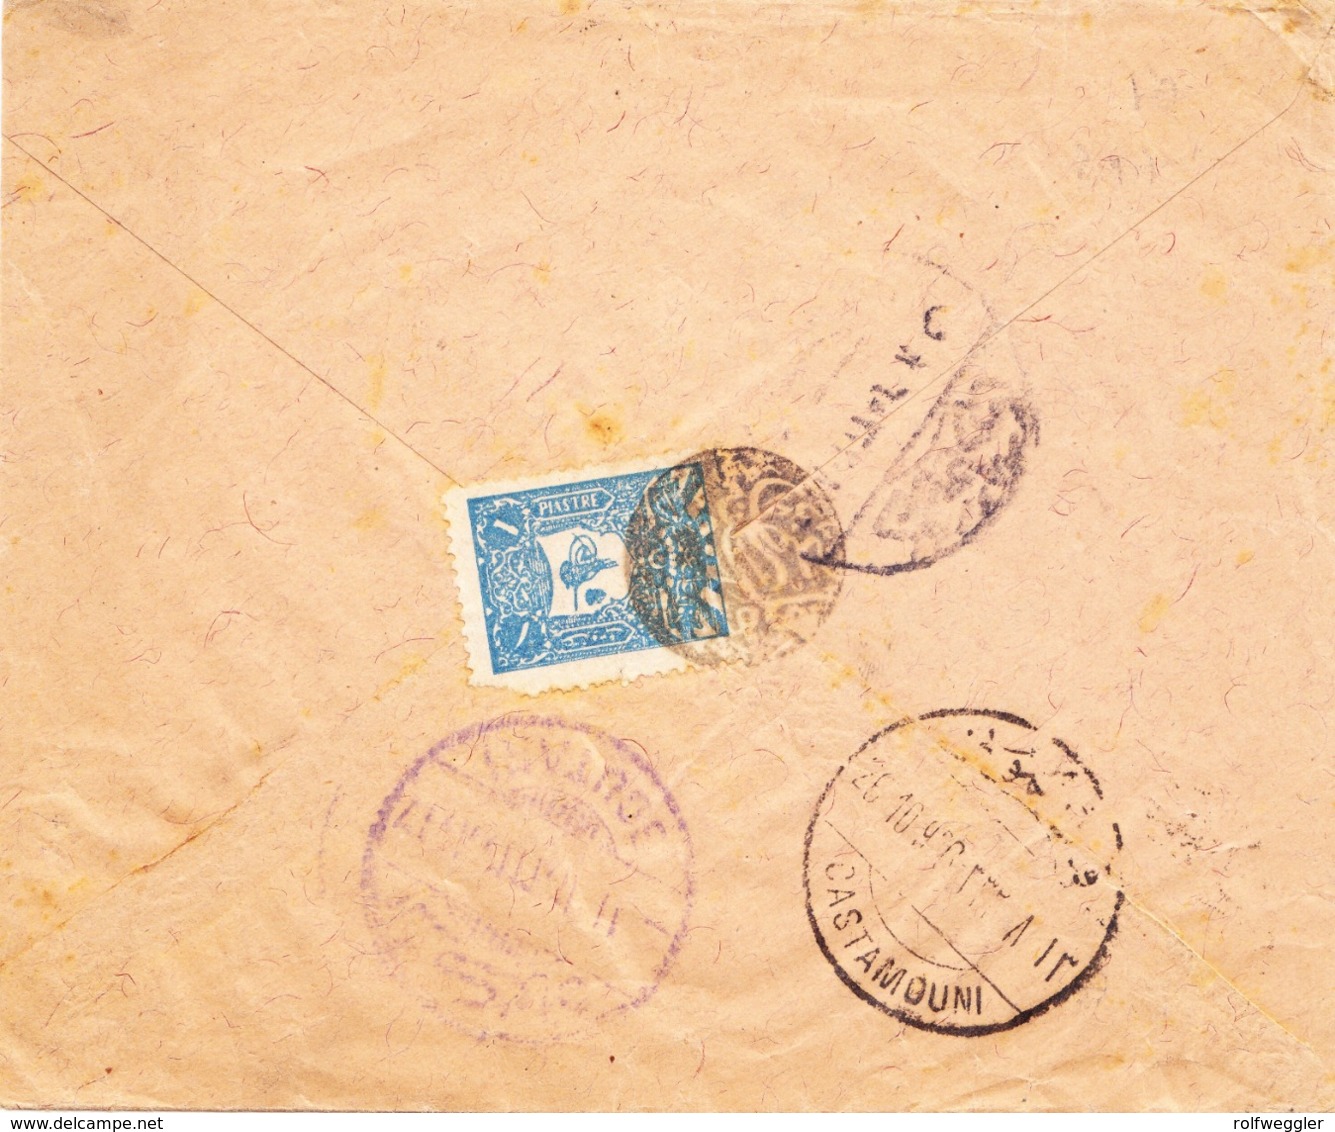 1906 Brief Aus Kargi Nach Constantinople, Frankiert Mit 1 Piaster Marke (Eckmangel), Negativ Stempel: Kargi Posta Subesi - 1837-1914 Smyrna